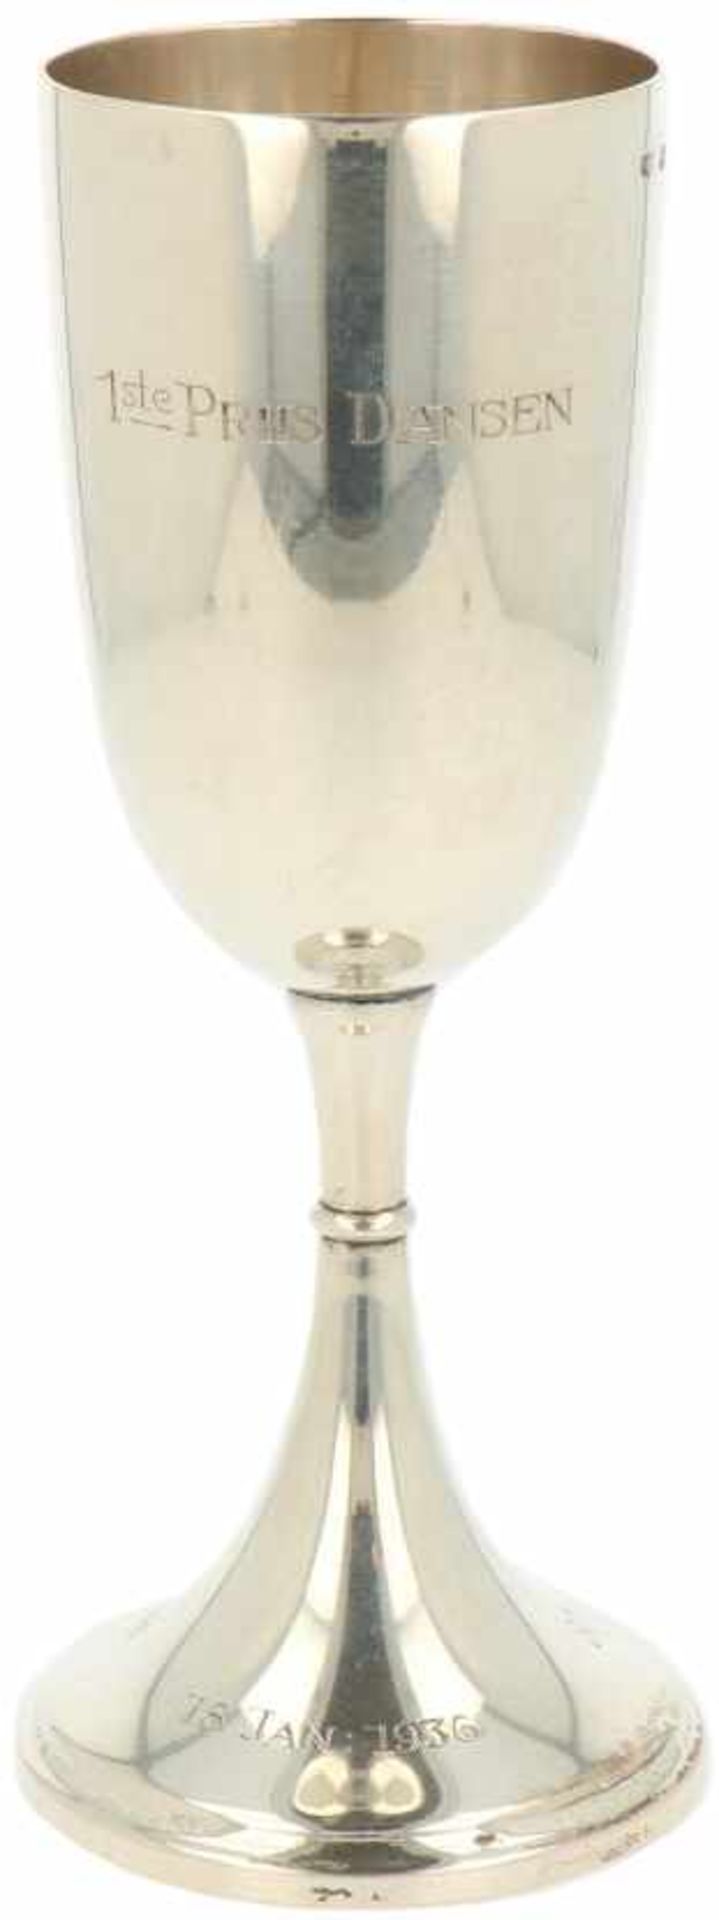 Prijsbeker zilver.Uitgevoerd als champagne flute. Nederland, Zeist, Gerritsen & van Kempen, 1936,